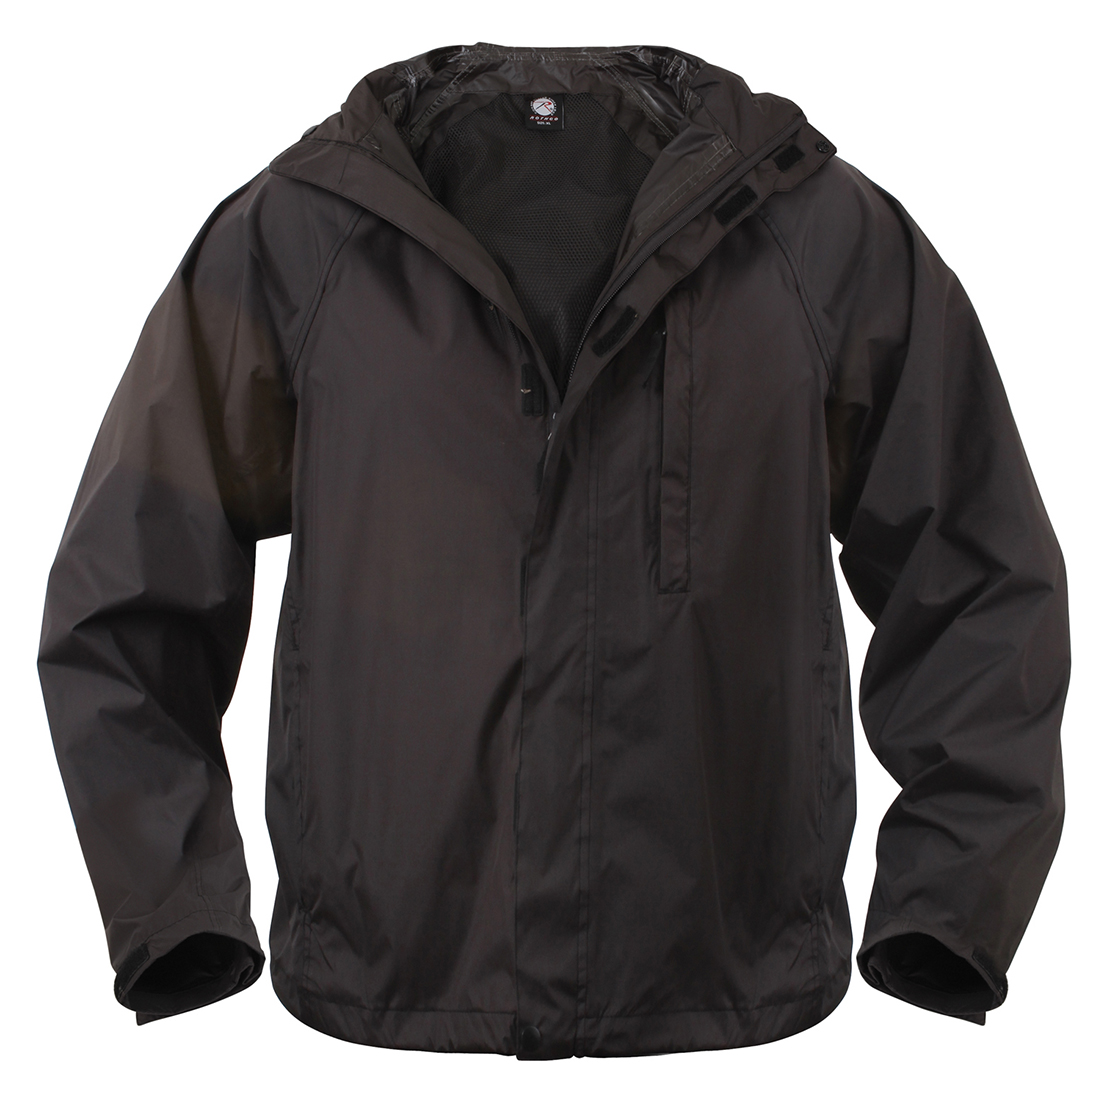 Rothco - Security Black Rain Jacket